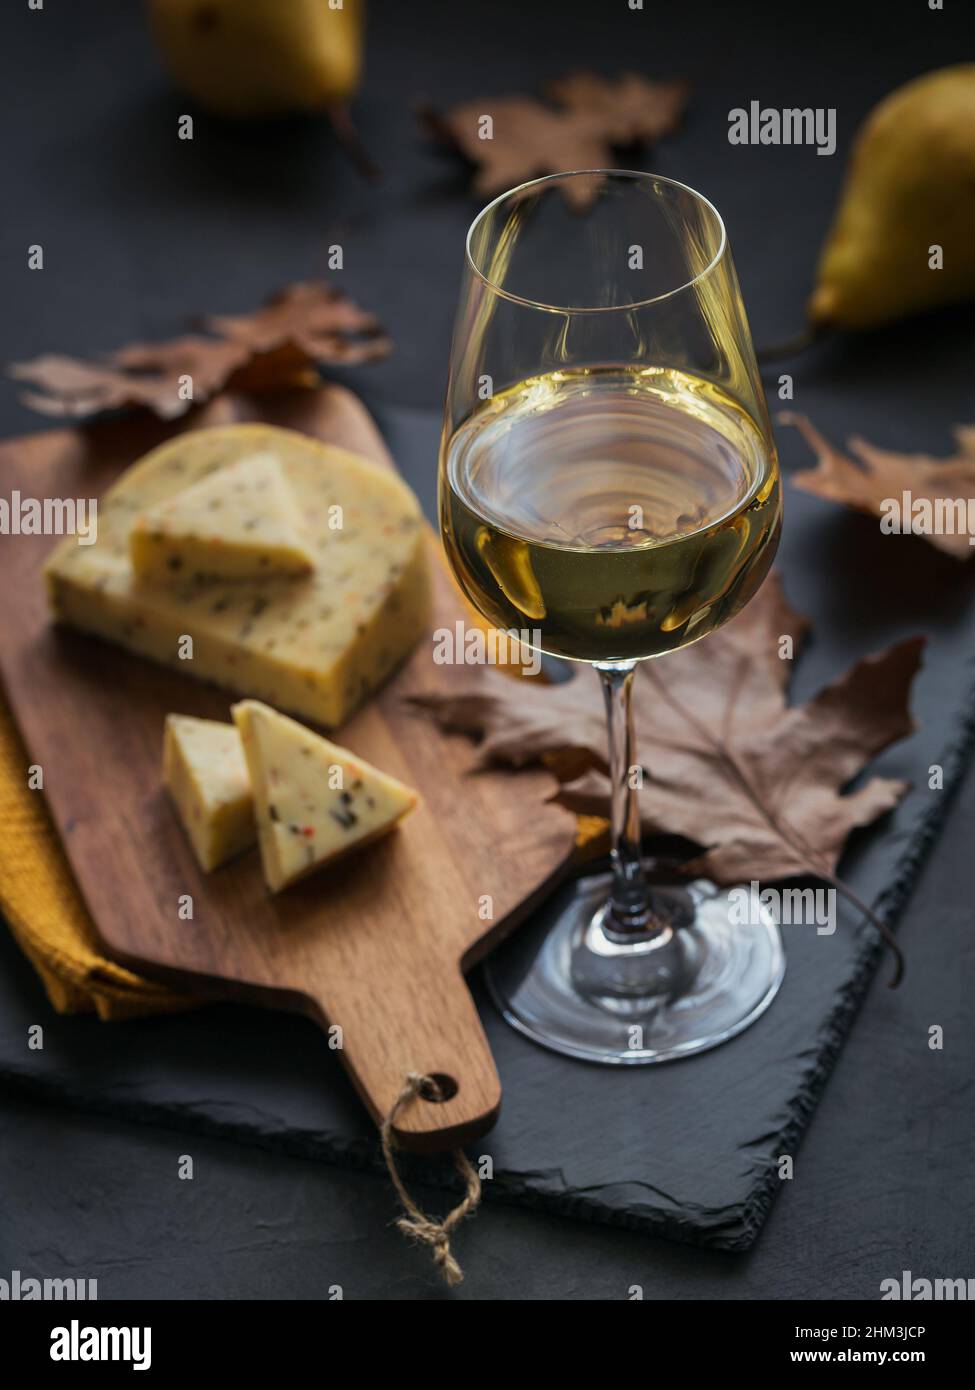 Ein Glas Weißwein wurde mit Käse auf einem Schneidebrett auf dunklem Hintergrund serviert. Herbstpicknick mit Käse, Wein und trockenen Blättern im rustikalen Stil. Stockfoto